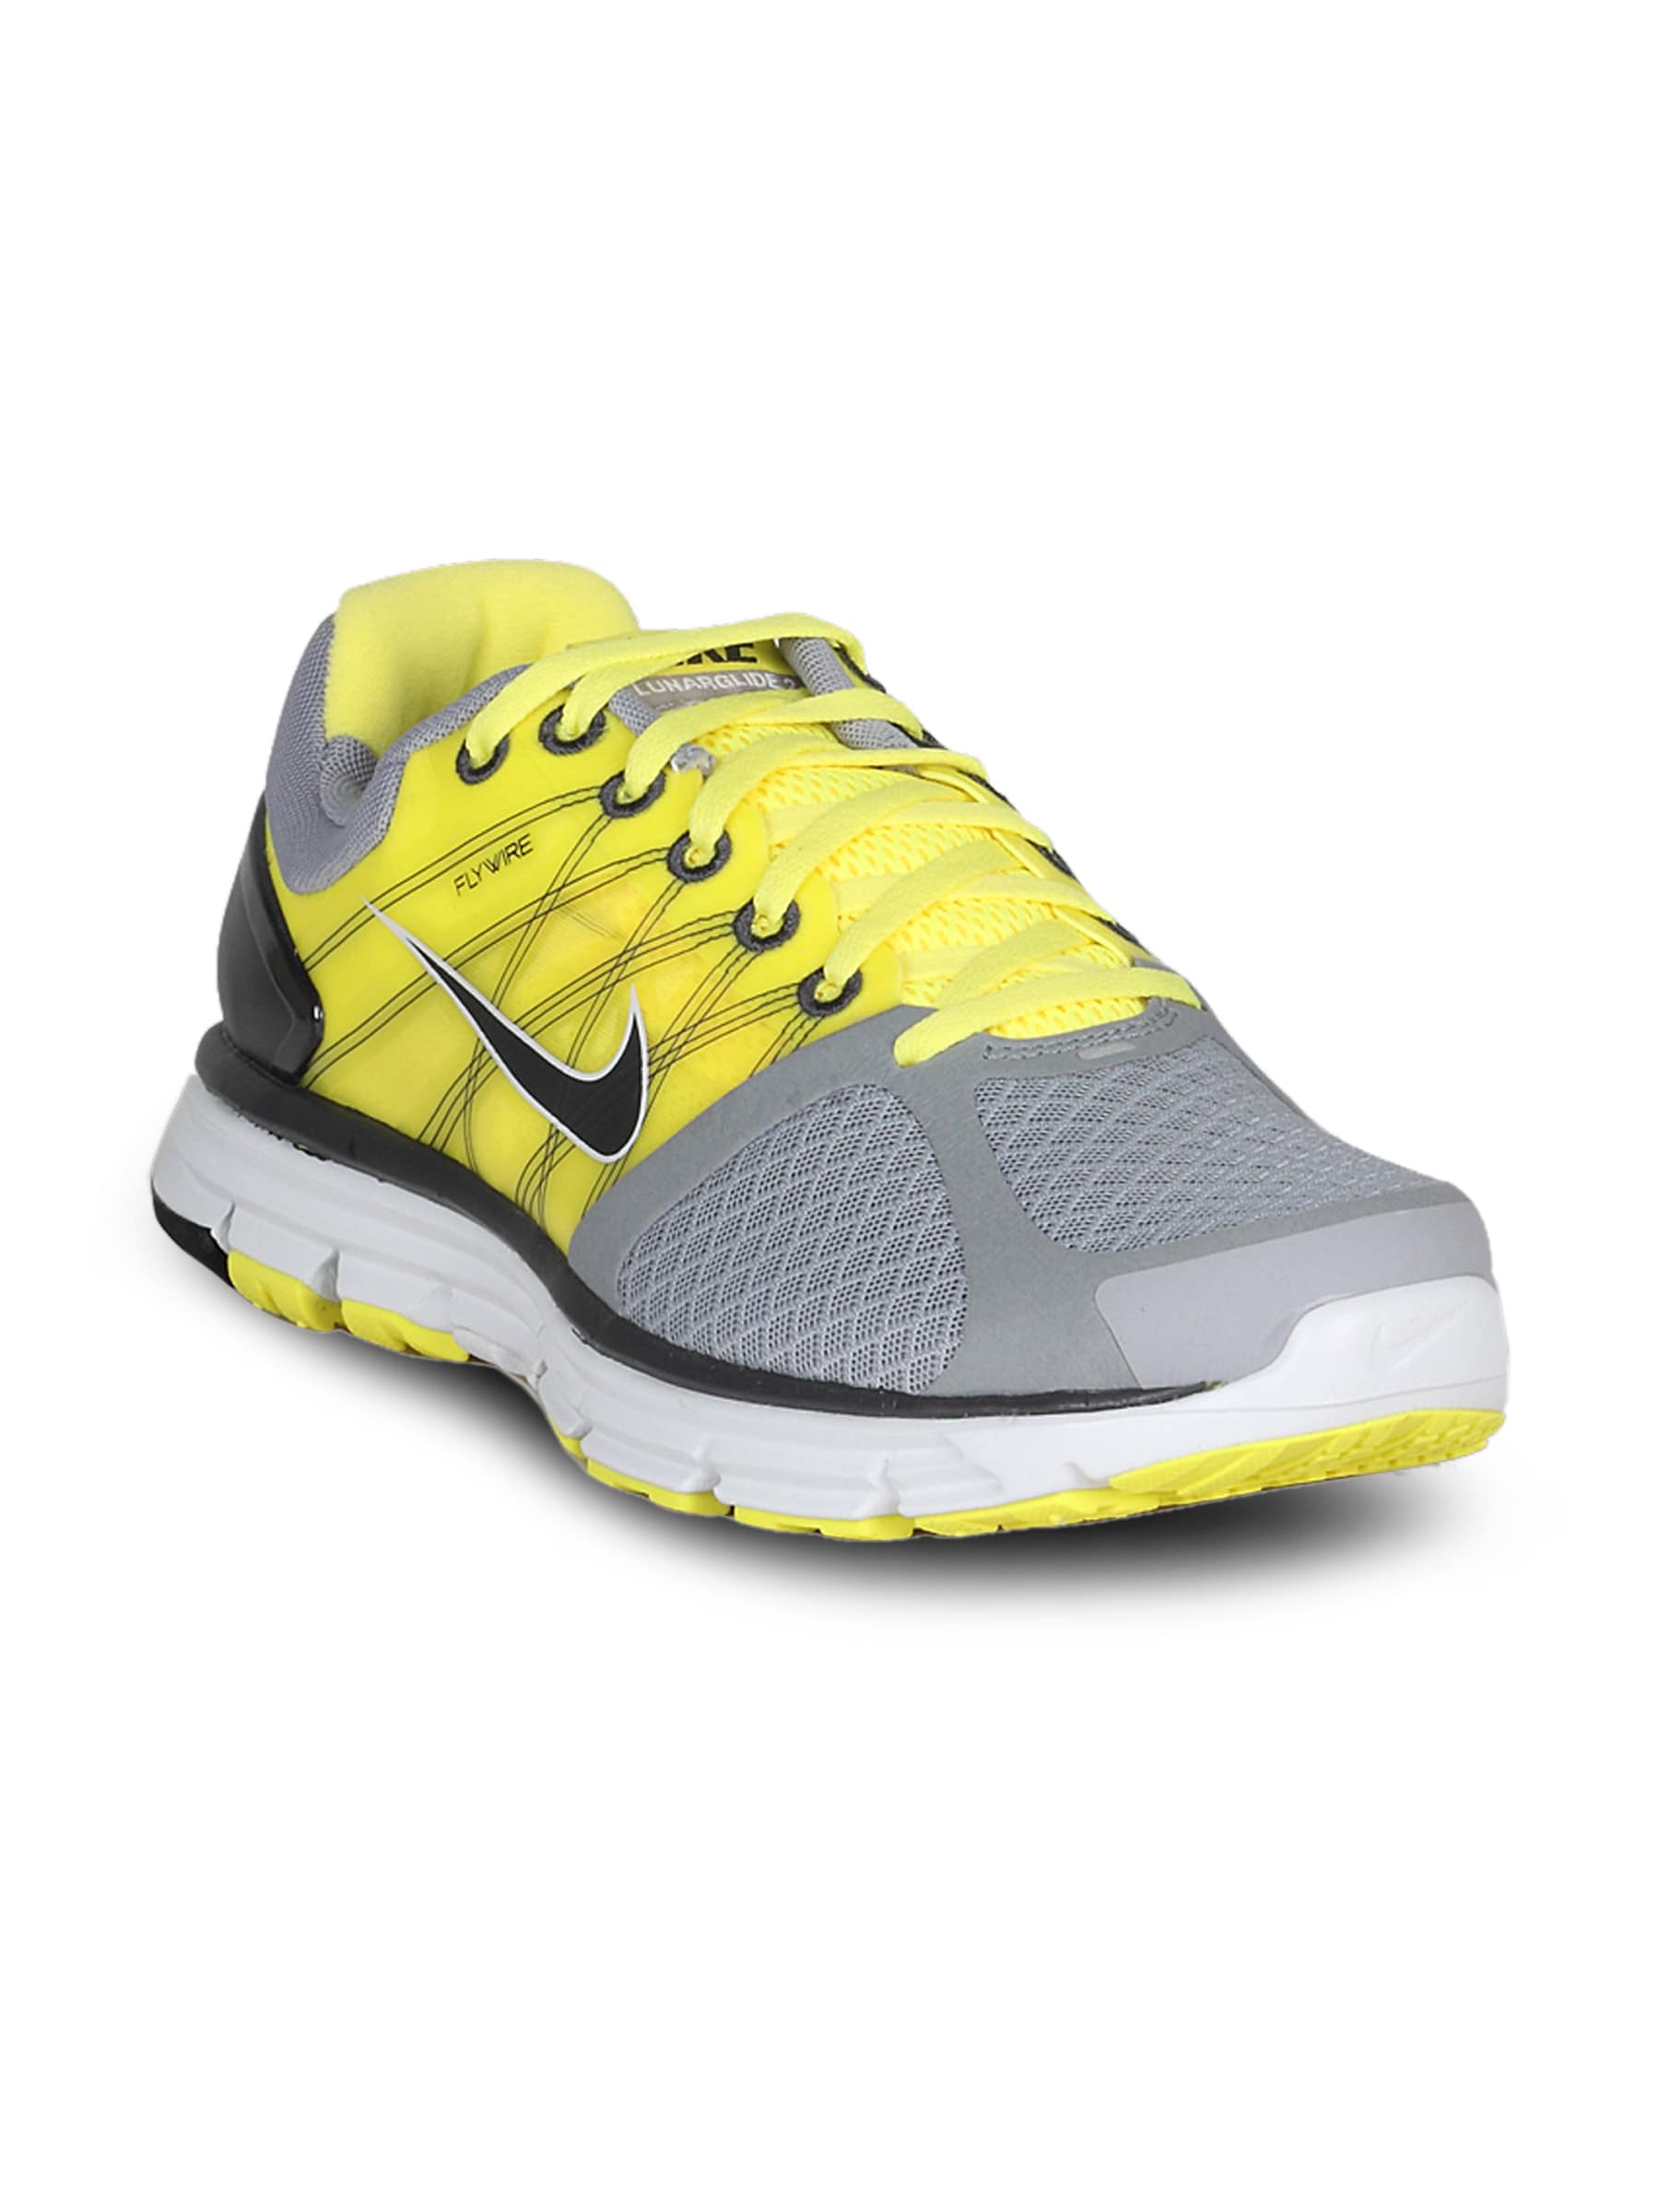 Nike Men's Lunarglide 2 Grey Yellow Shoe